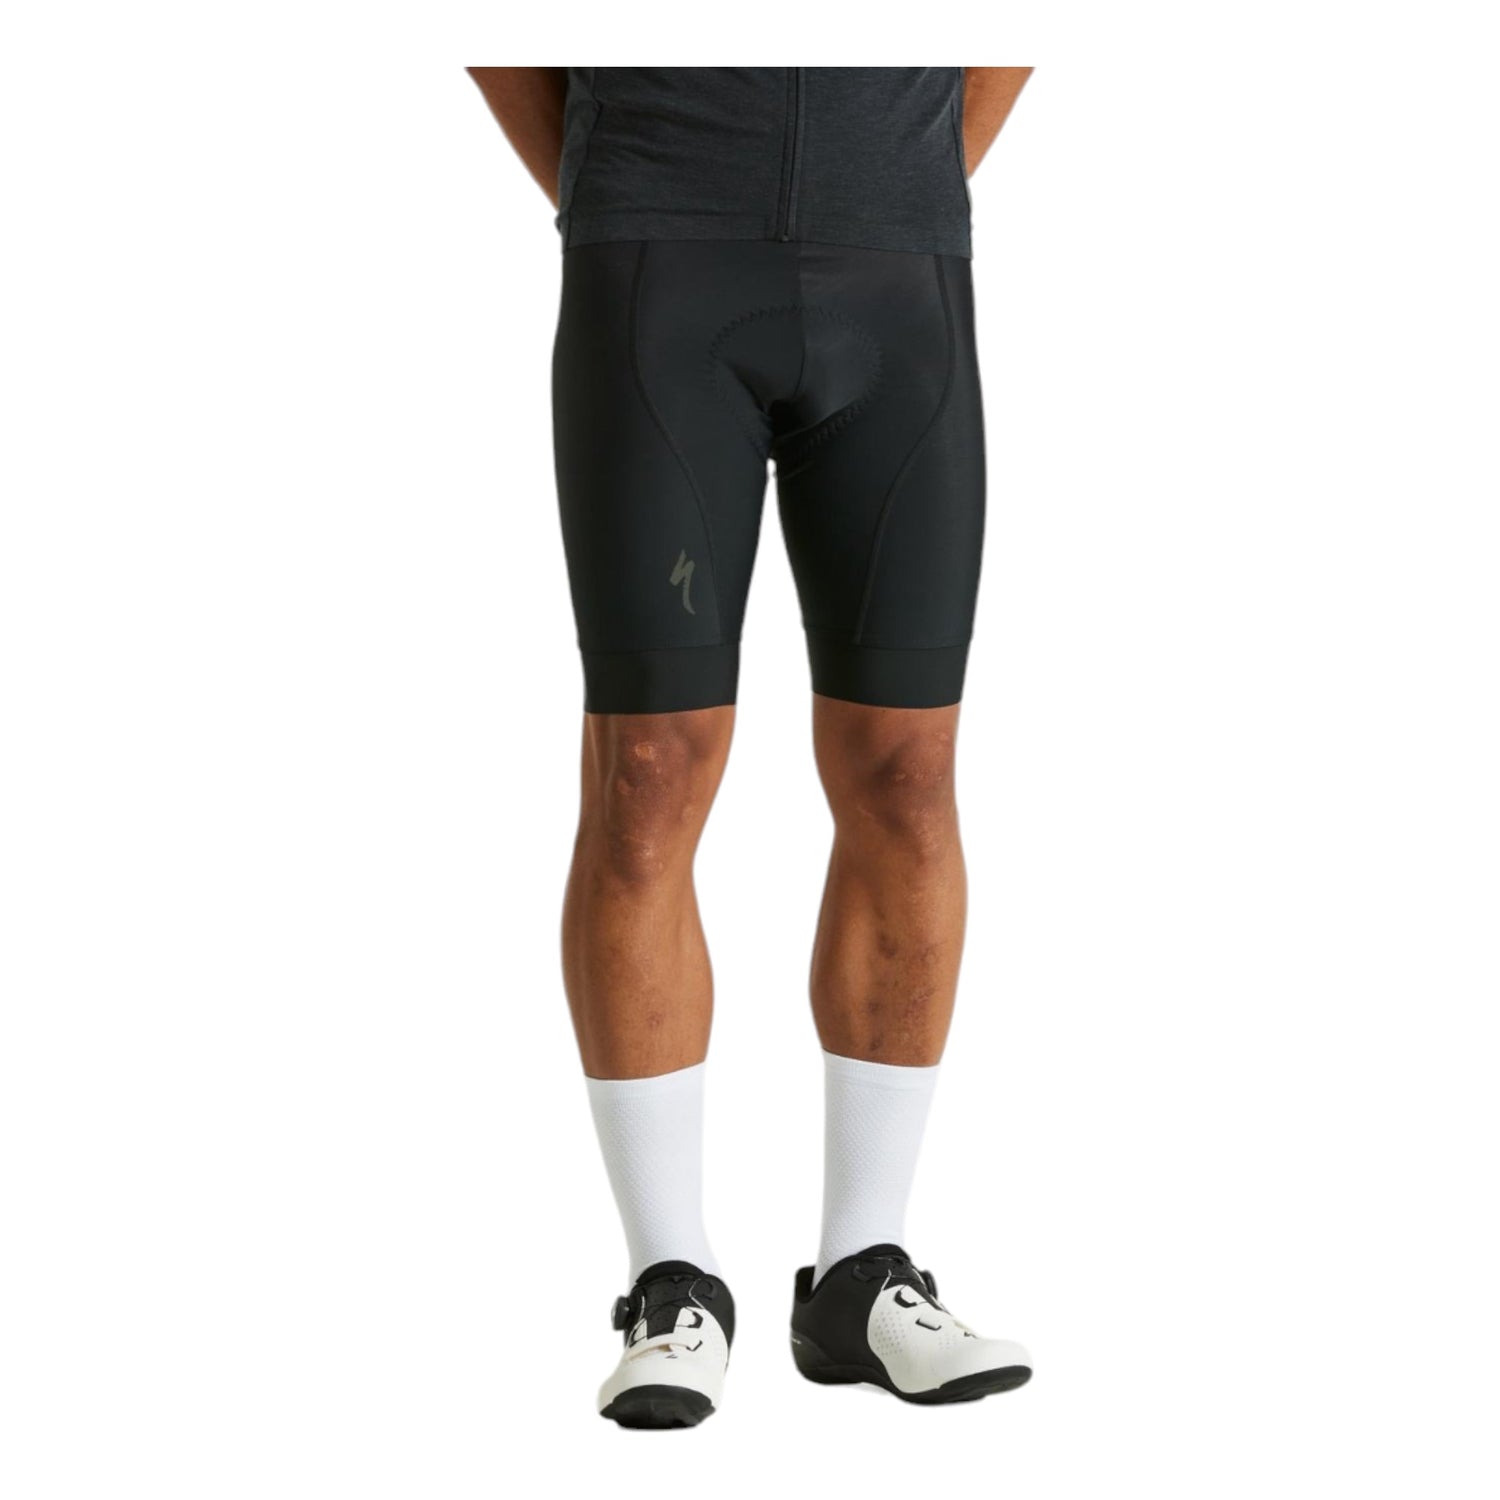 RBX Men Cycling Shorts